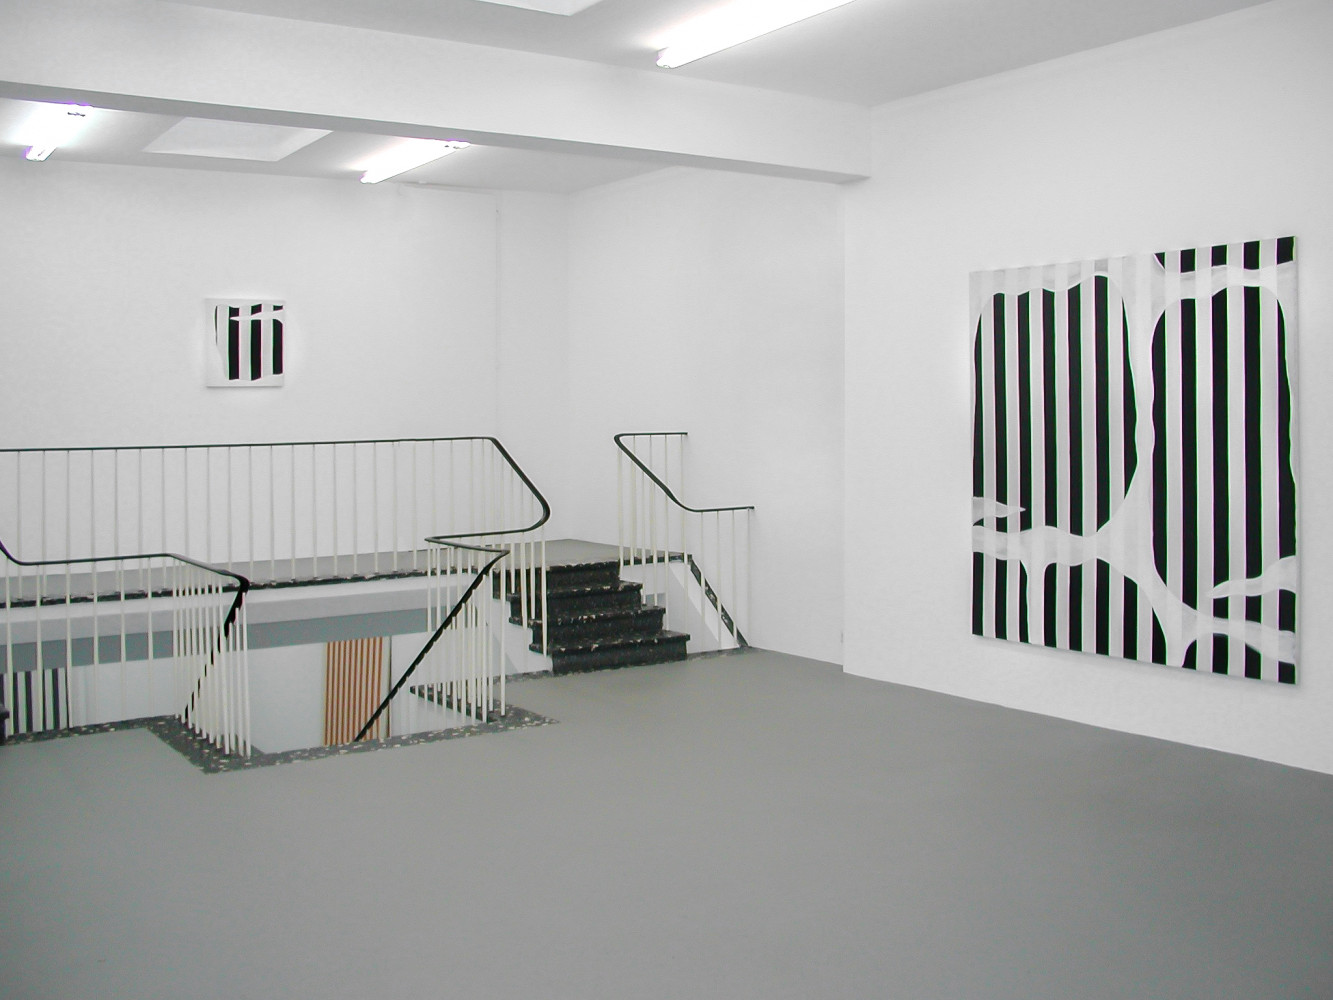 Daniel Buren, Installationsansicht, Buchmann Galerie Köln, 2002